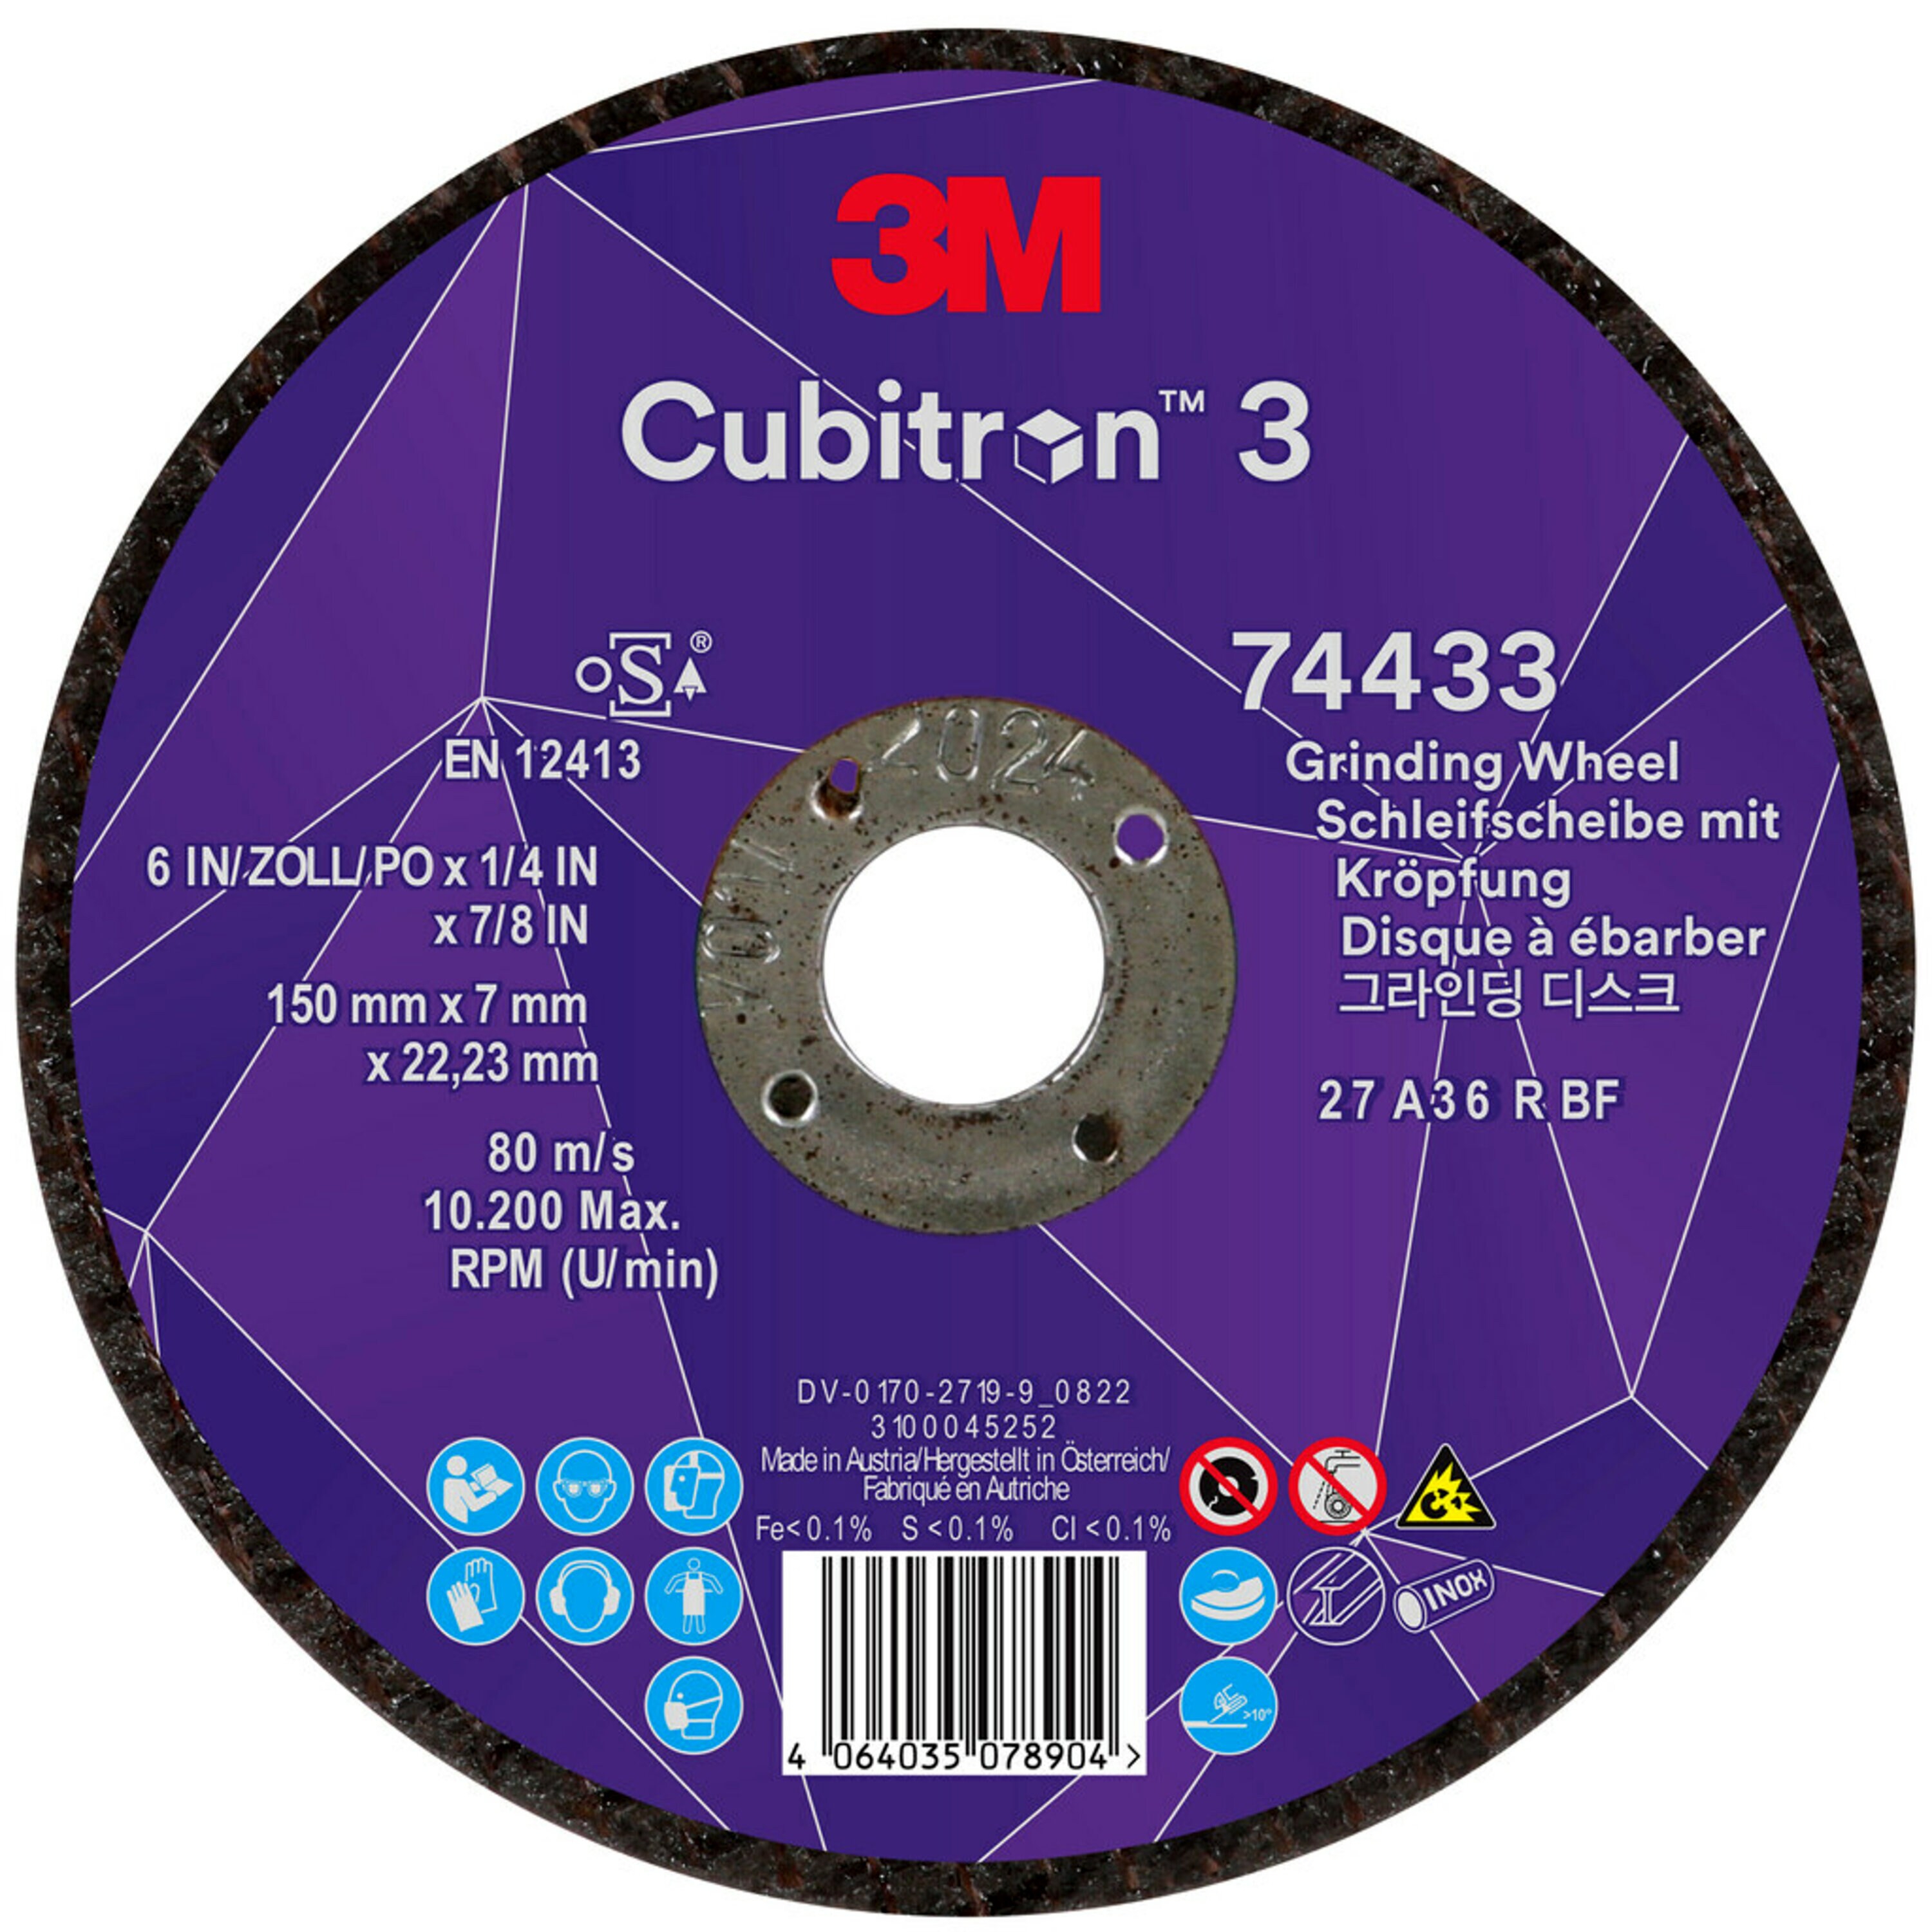 3M Cubitron 3 disco abrasivo, 150 mm, 7,0 mm, 22,23 mm, 36 , tipo 27, specialmente per la sgorbia # 74433